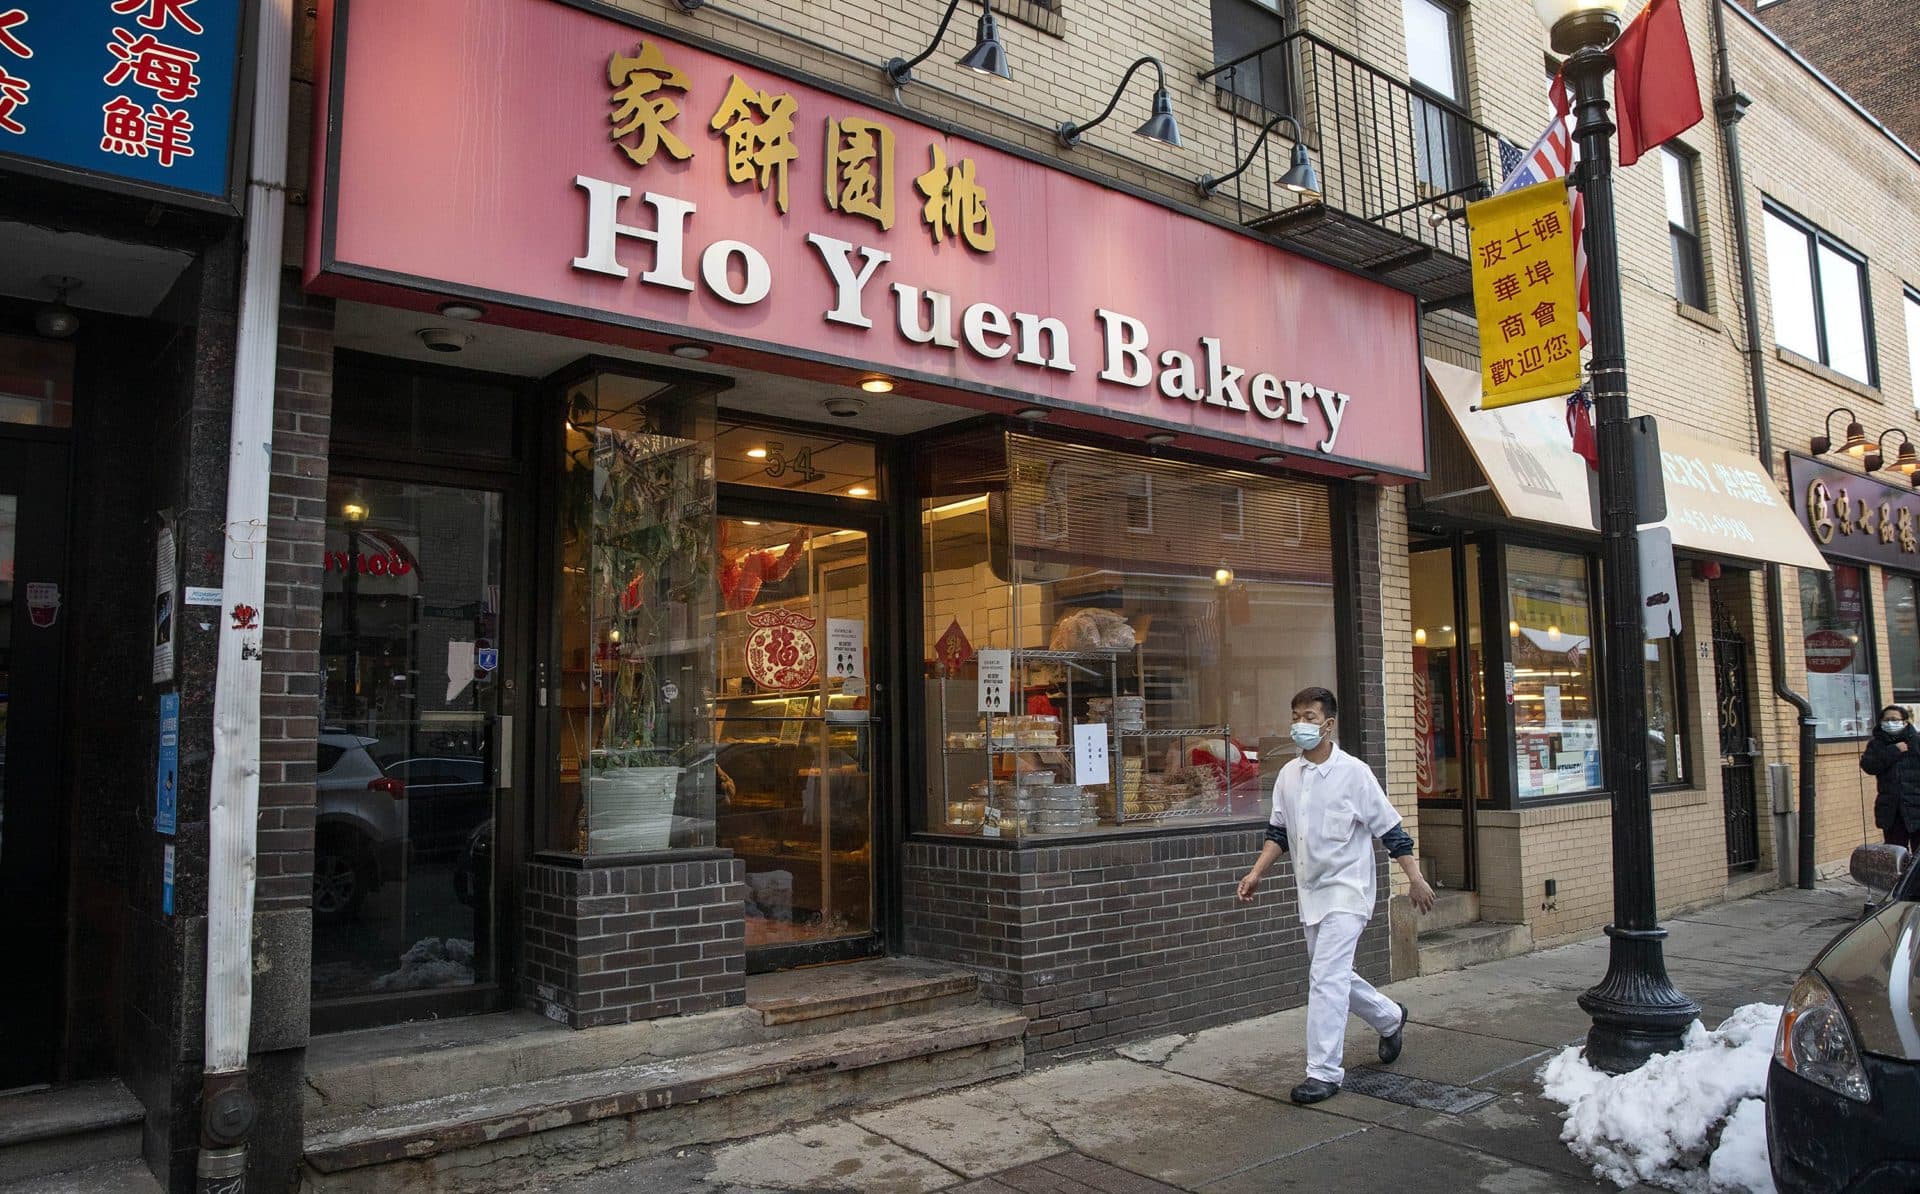 The Ho Yuen Bakery on Beach Street in Boston. (Robin Lubbock/WBUR)